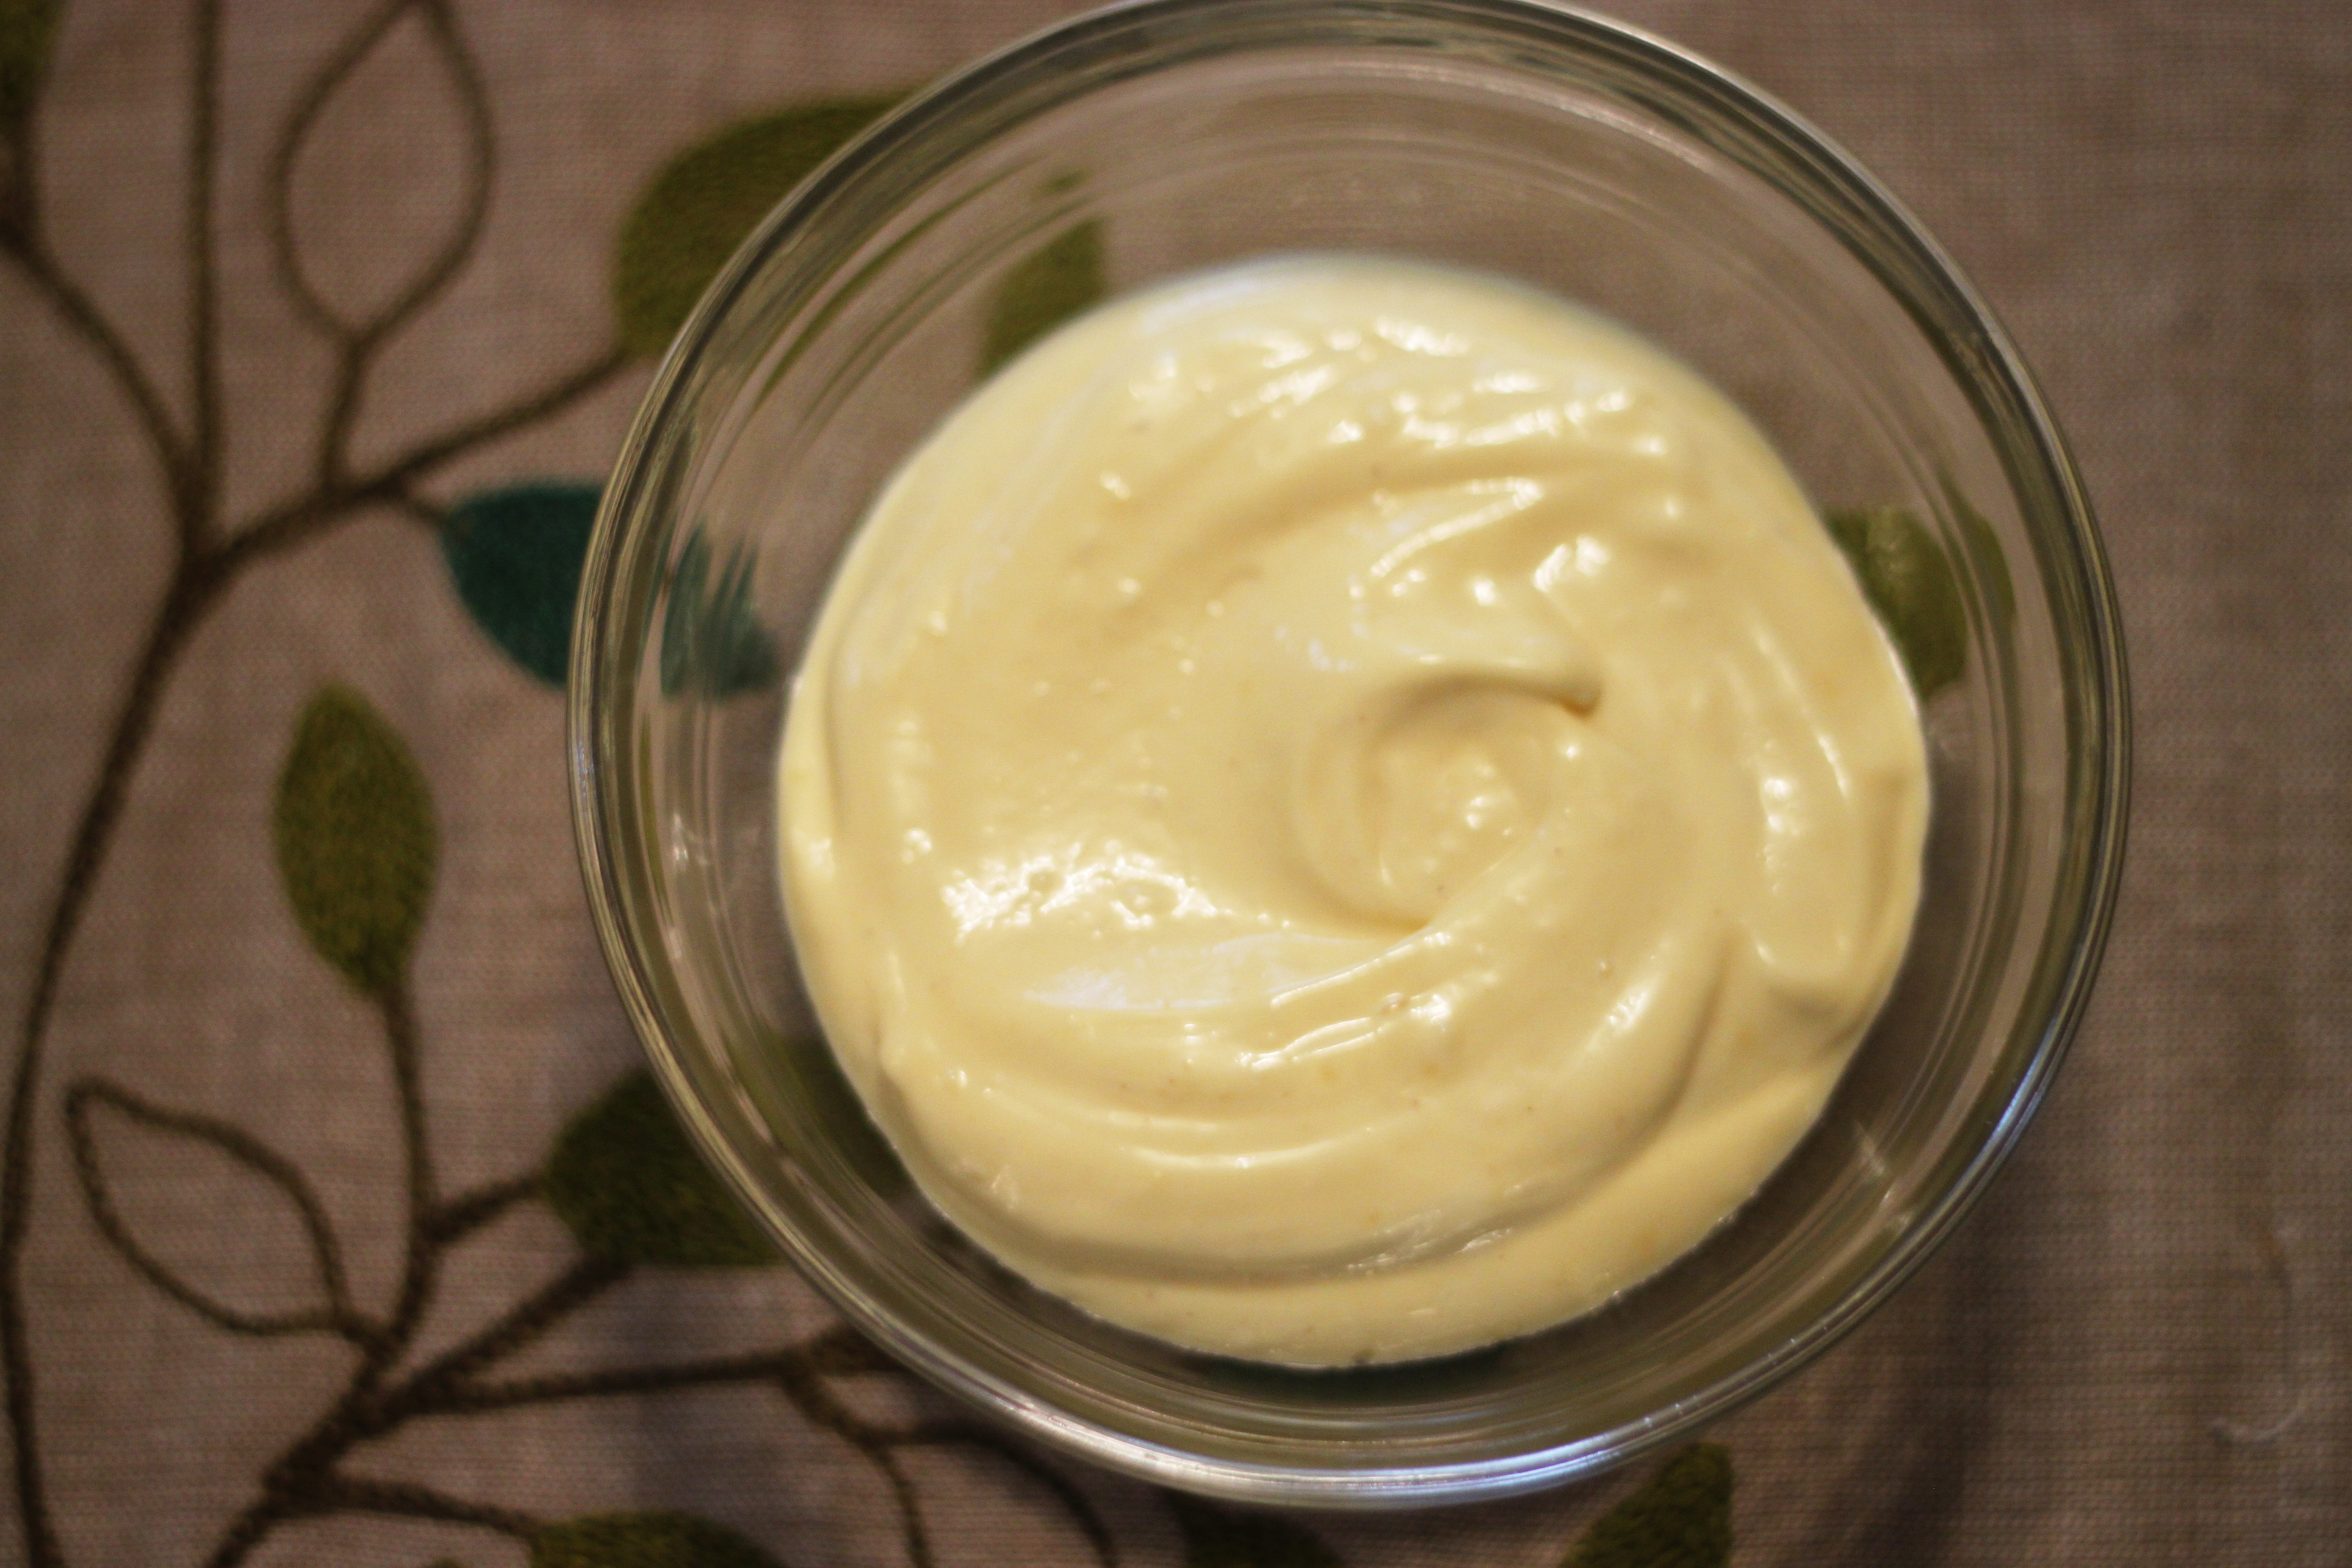 mayonnaise and avocado hair mask